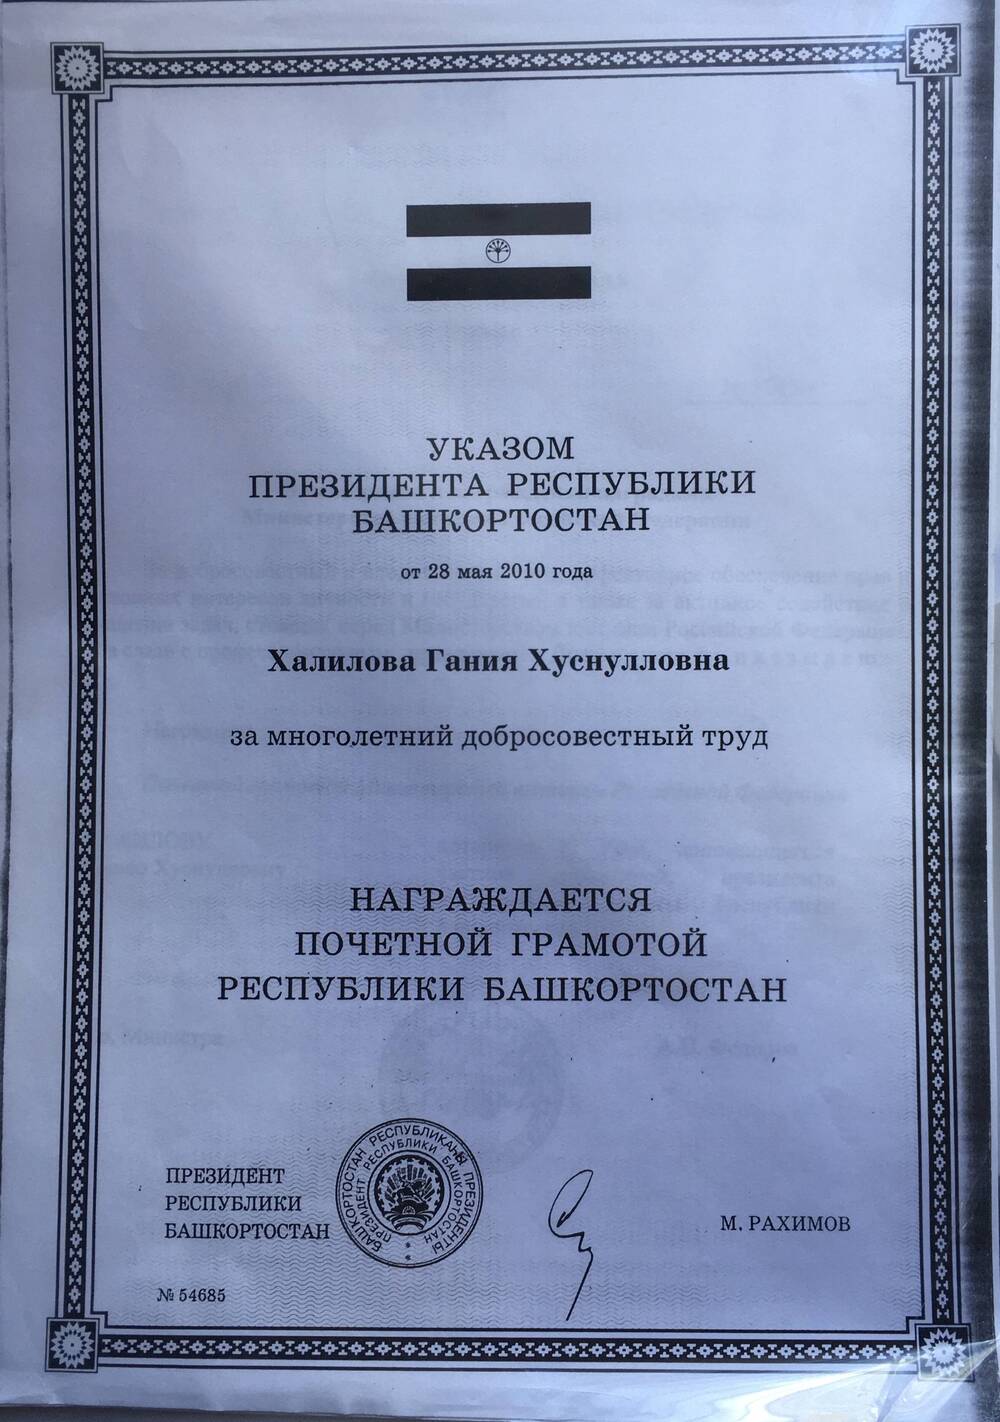 Пакет с копиями документов заслуженного юриста Башкирской АССР Халиловой Гании Хуснулловны.